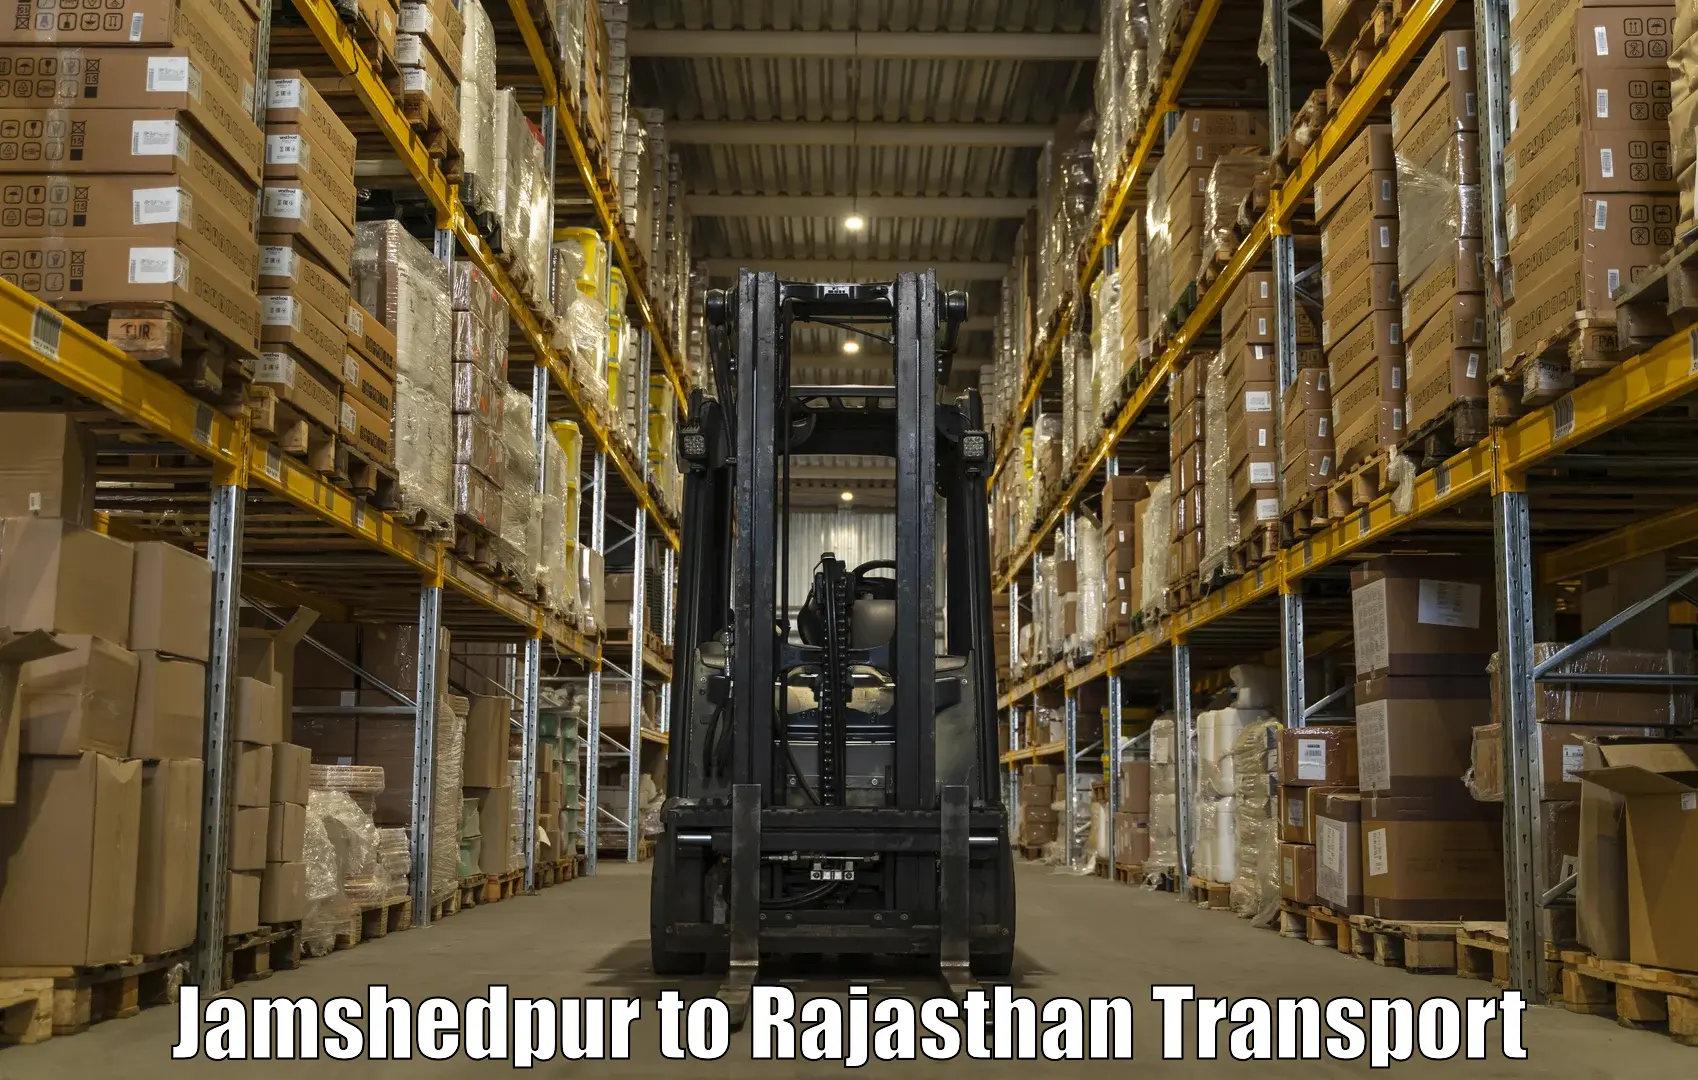 Road transport online services Jamshedpur to Kankroli